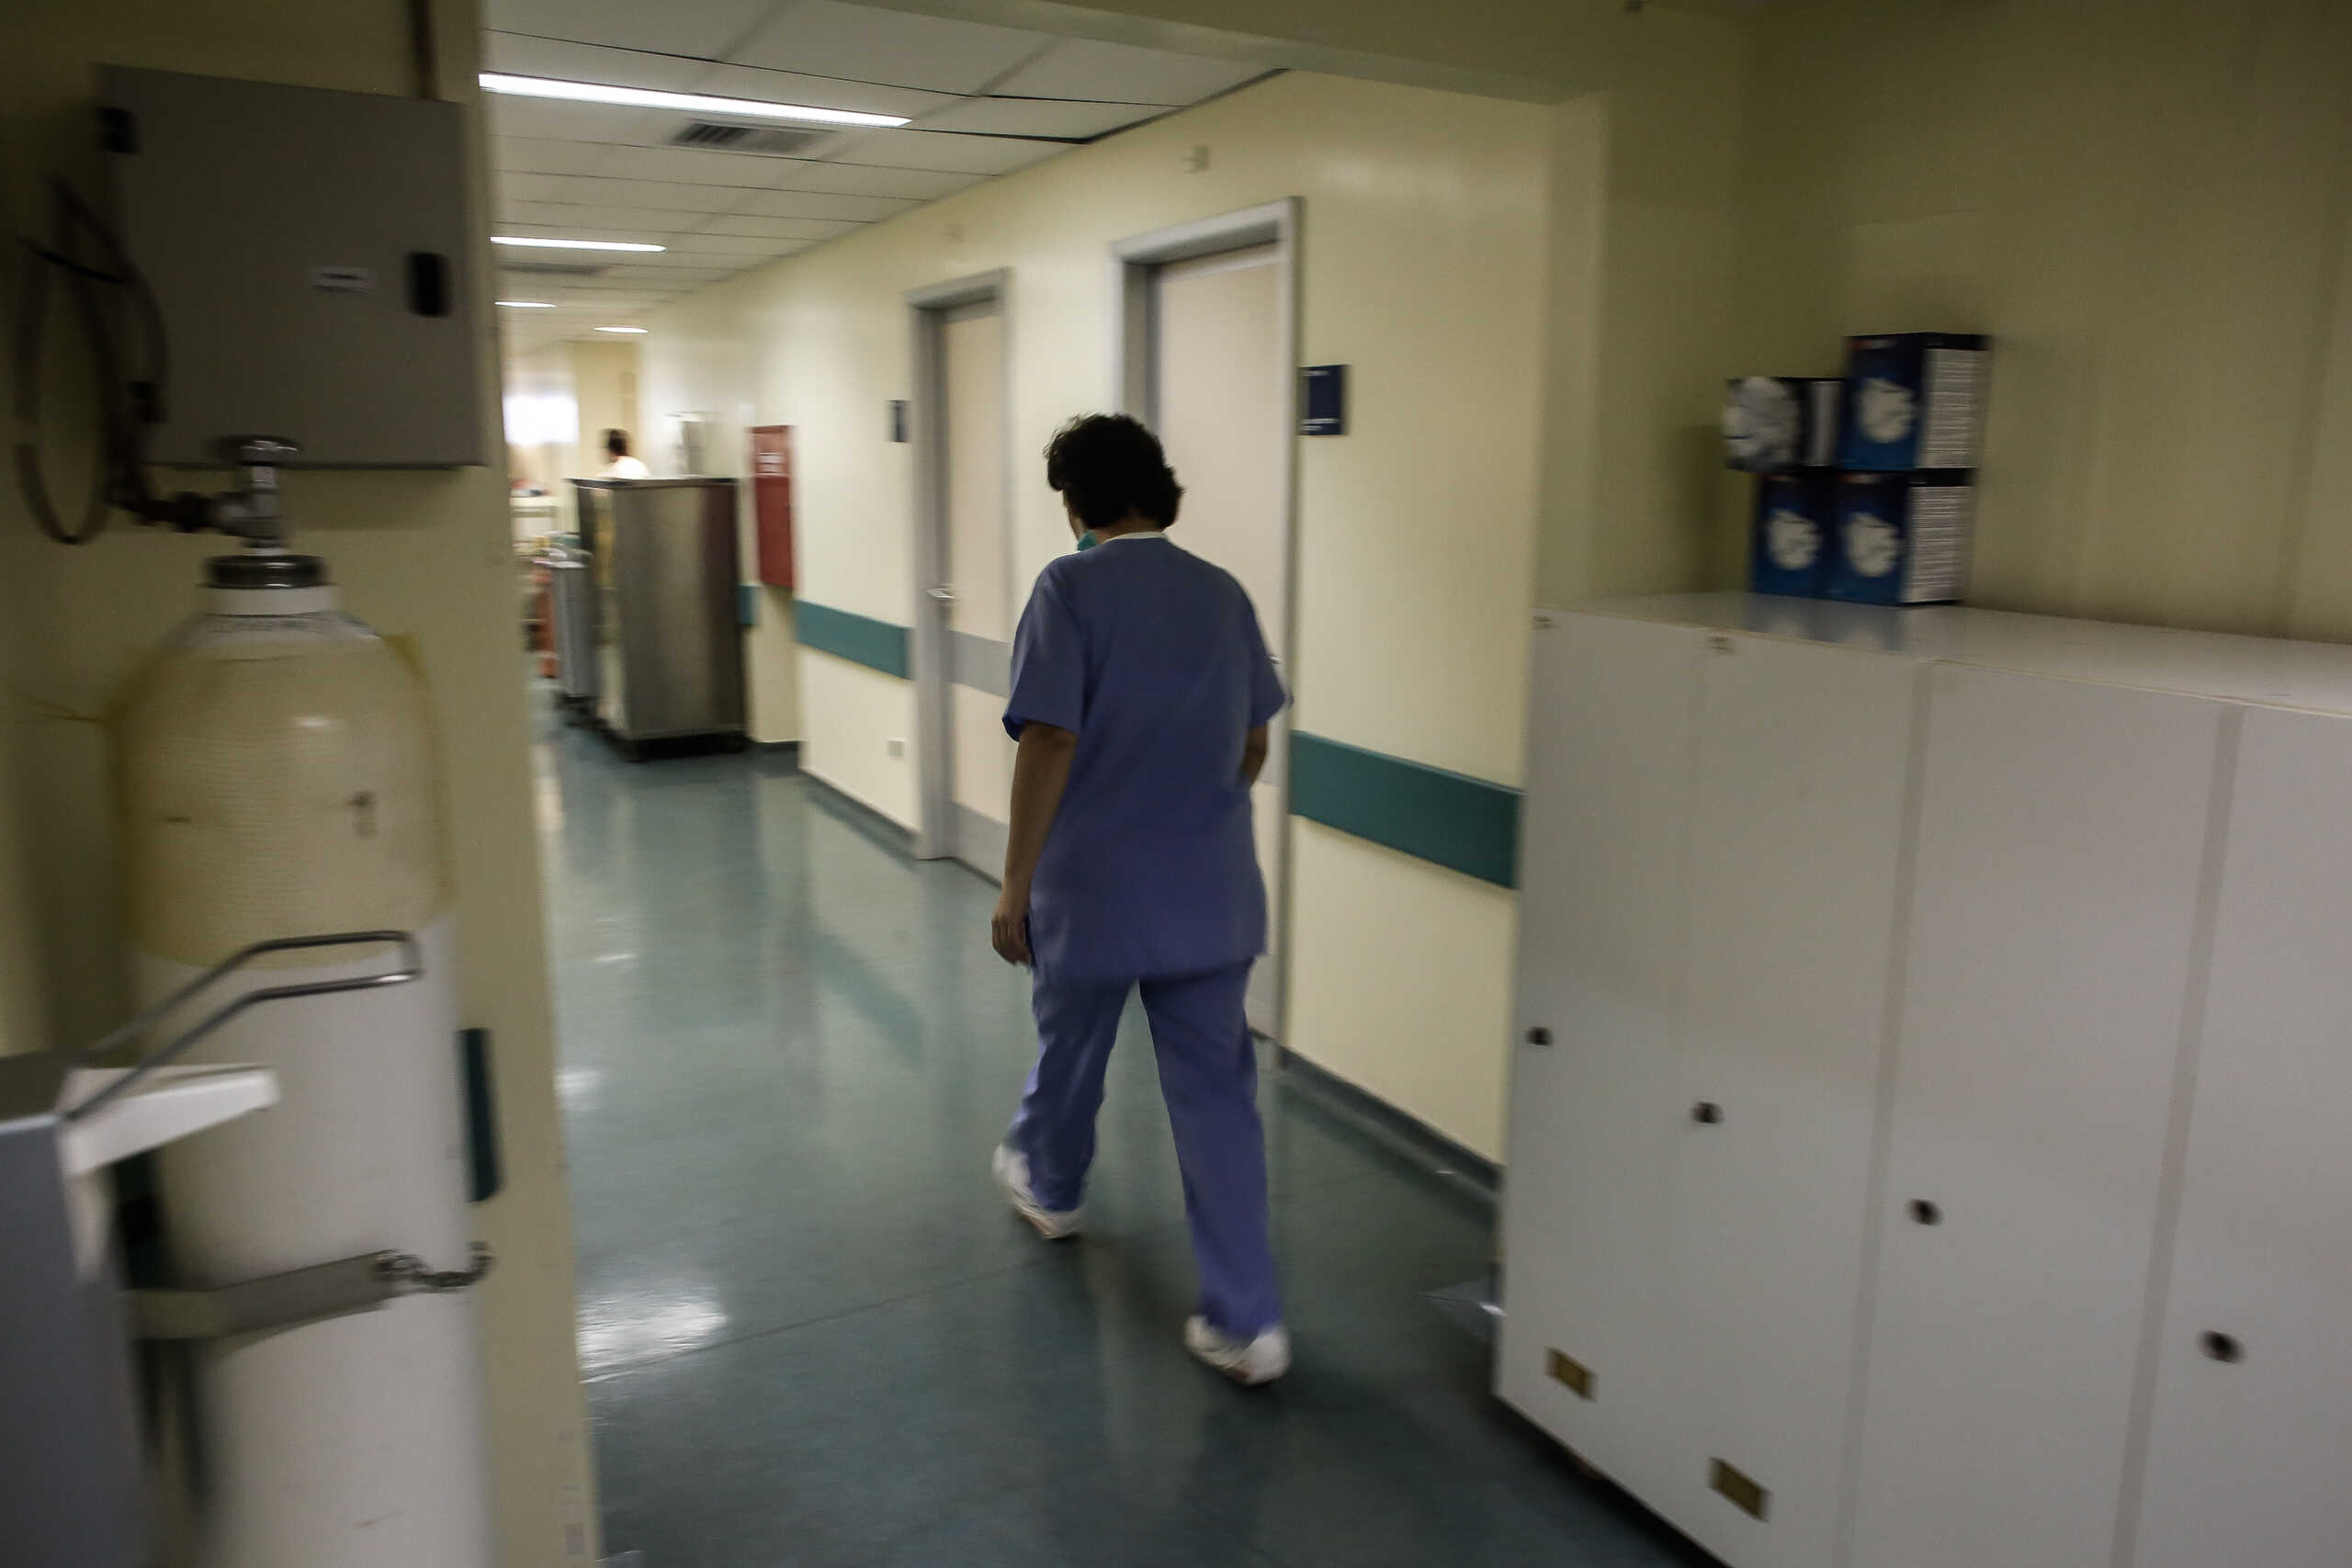 ΑΣΕΠ: Αιτήσεις από σήμερα για 775 μόνιμες προσλήψεις σε νοσοκομεία με απολυτήριο Γυμνασίου ή Λυκείου